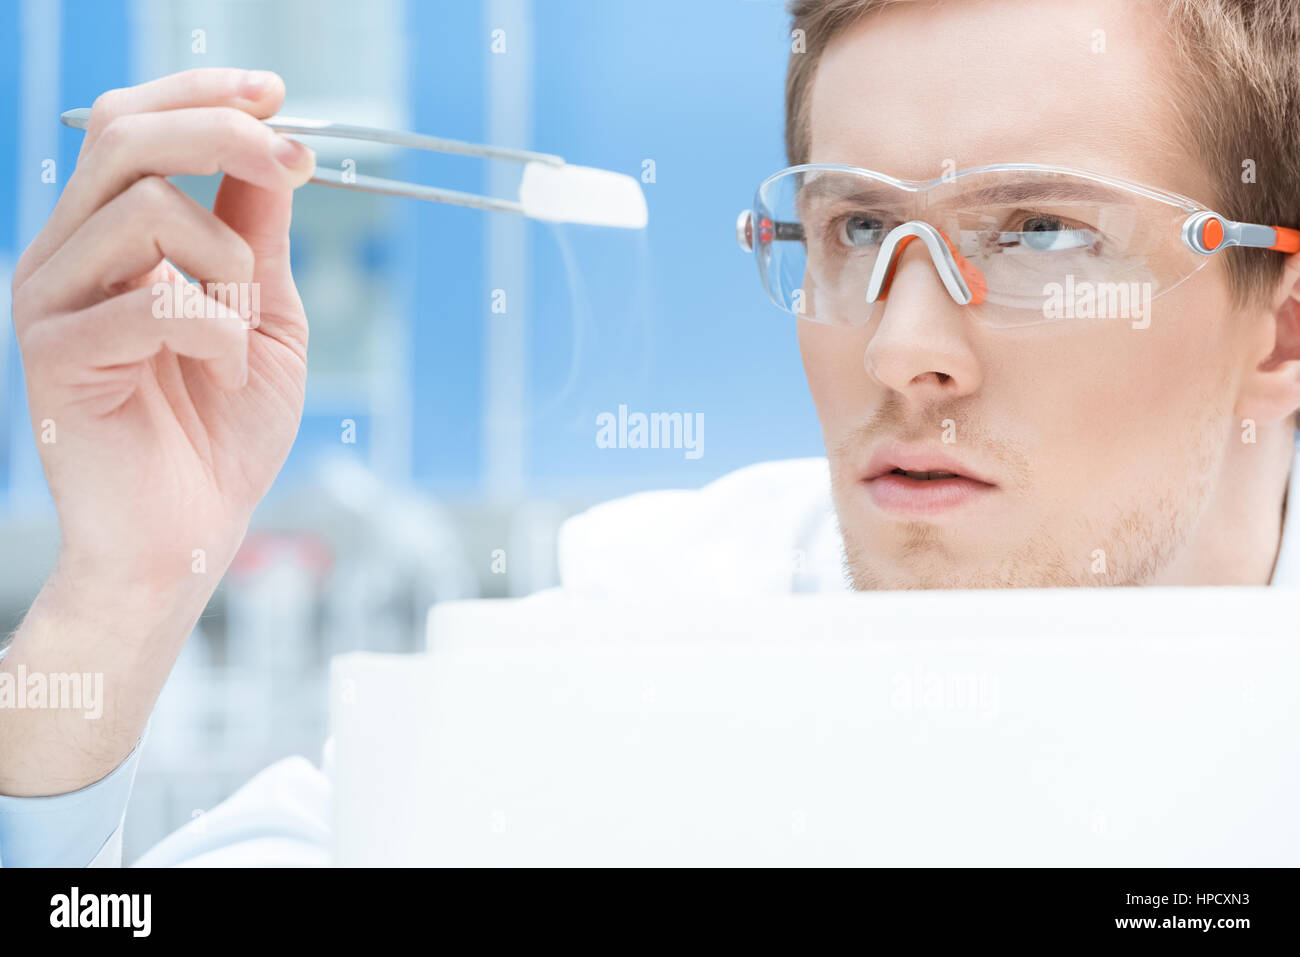 konzentrierte Wissenschaftler in Schutzbrille und Handschuhe Blick auf chemische Probe Stockfoto